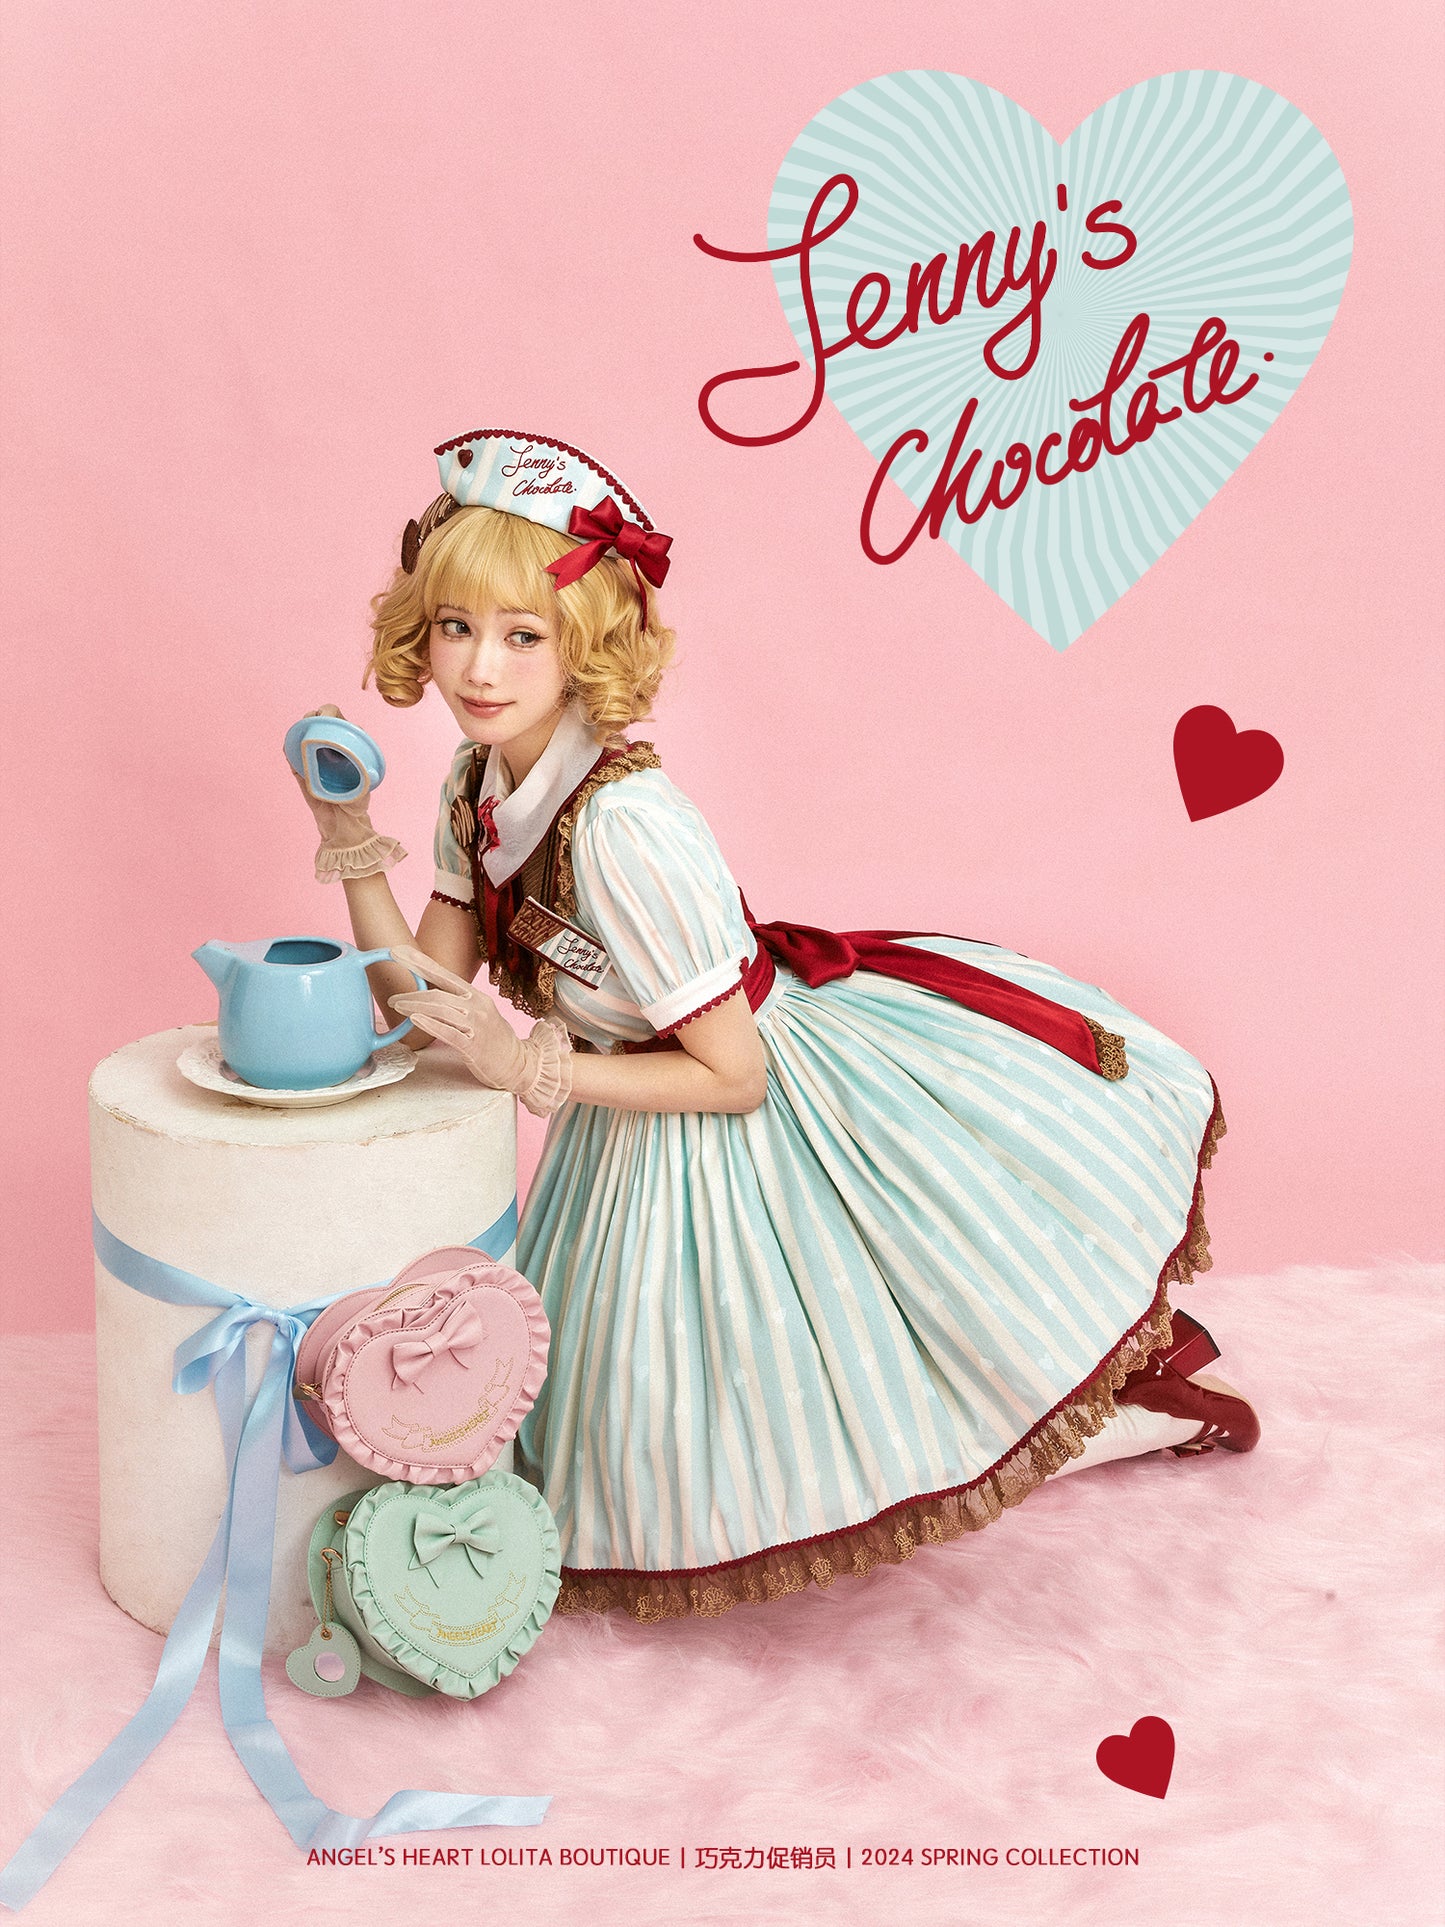 【受注予約~4/14】Chocolate Maid エプロン付きワンピース【Angels Heart】